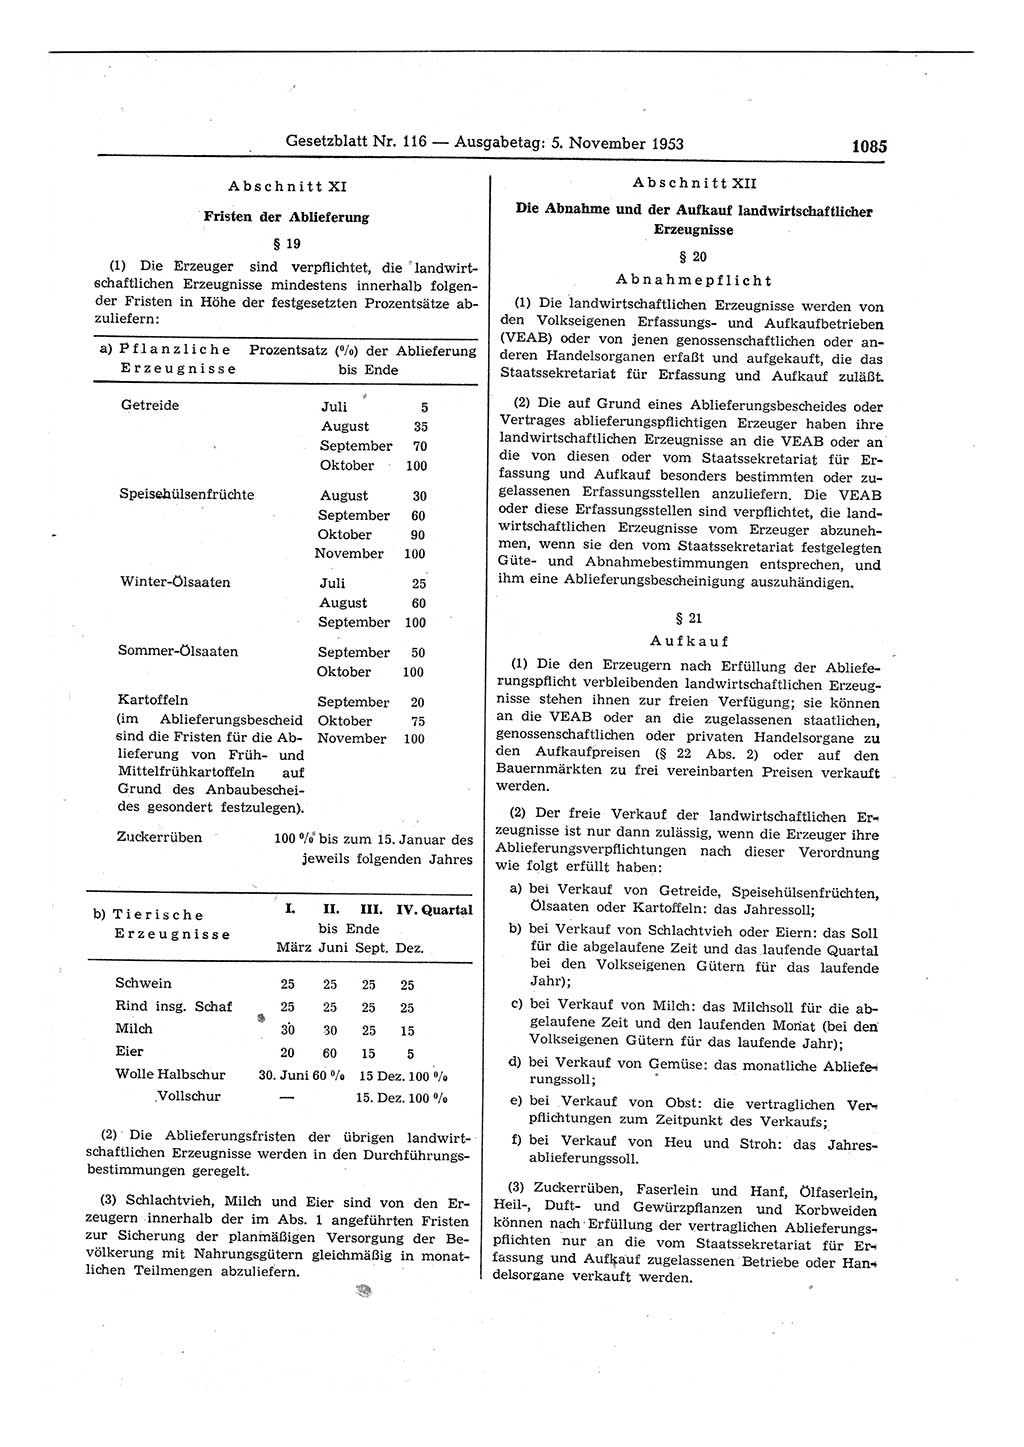 Gesetzblatt (GBl.) der Deutschen Demokratischen Republik (DDR) 1953, Seite 1085 (GBl. DDR 1953, S. 1085)